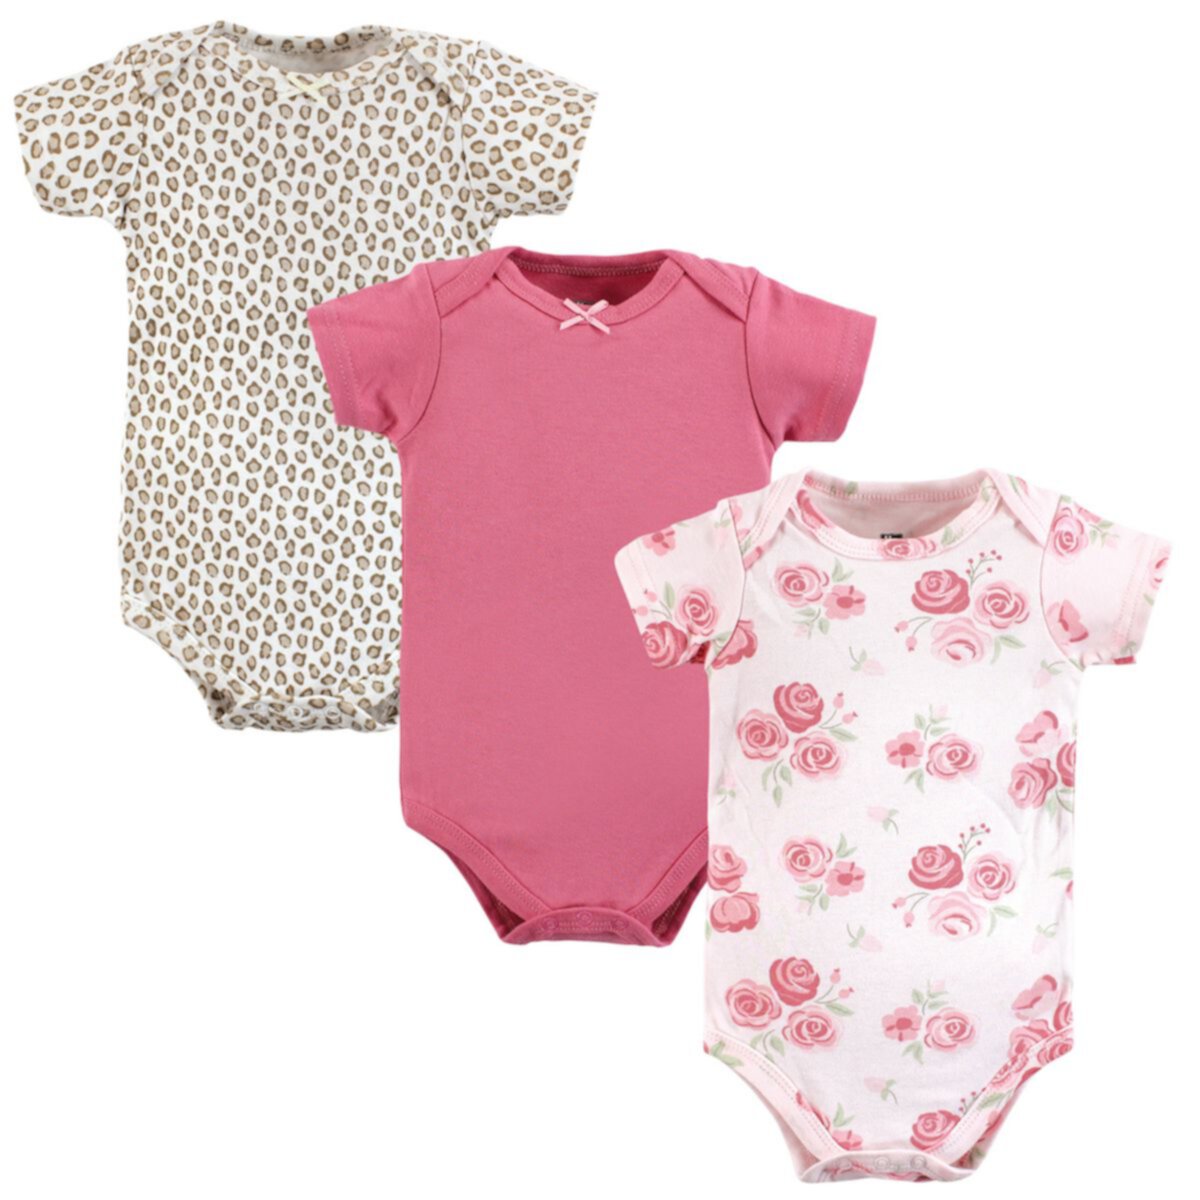 Детские комплекты одежды Hudson Baby Для девочек Cotton Bodysuits, Blush Rose Leopard Hudson Baby